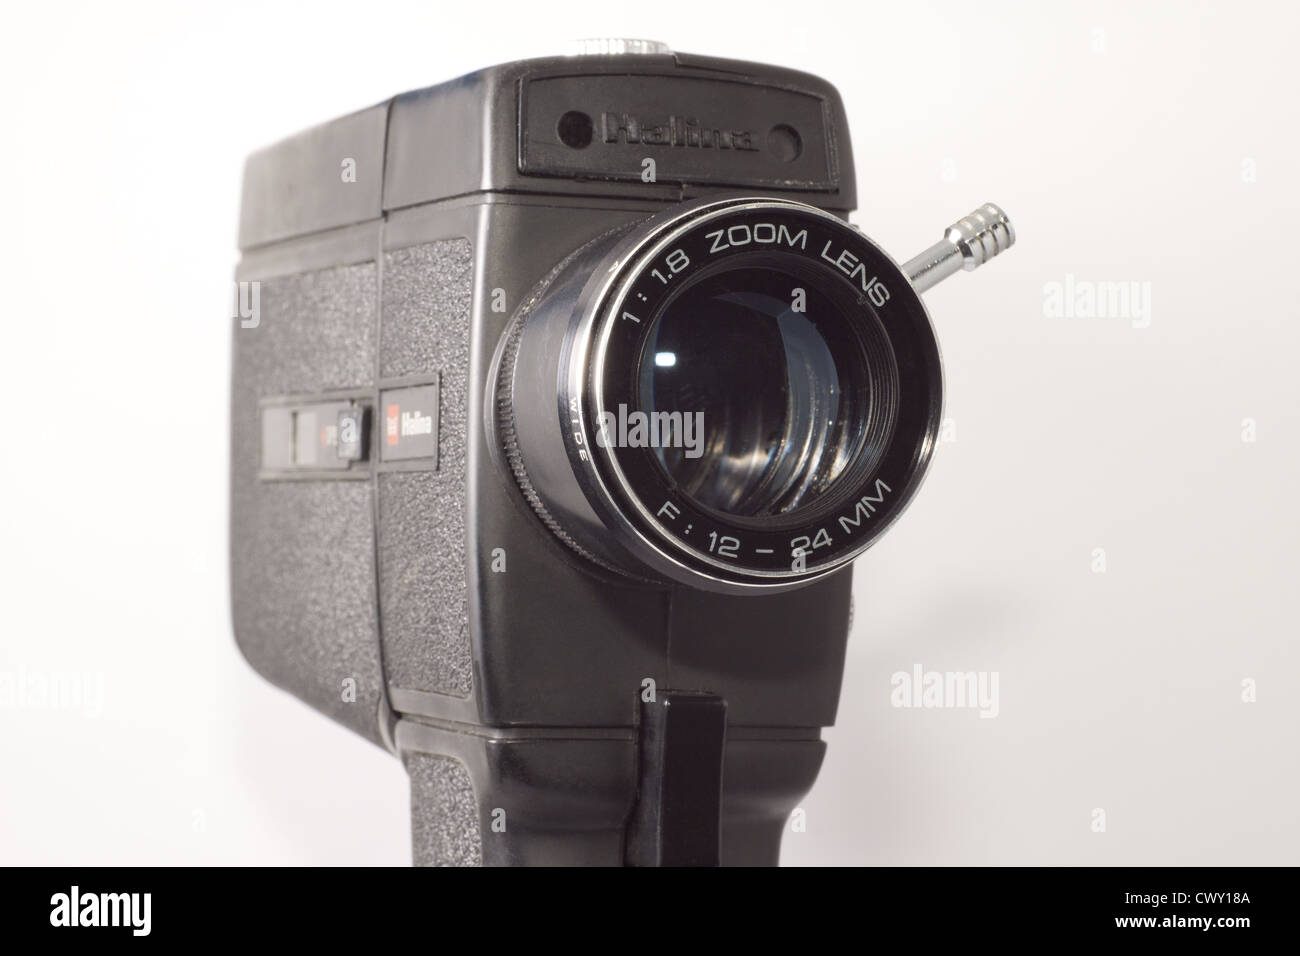 Super 8mm caméra ciné avec un objectif zoom x2 Banque D'Images